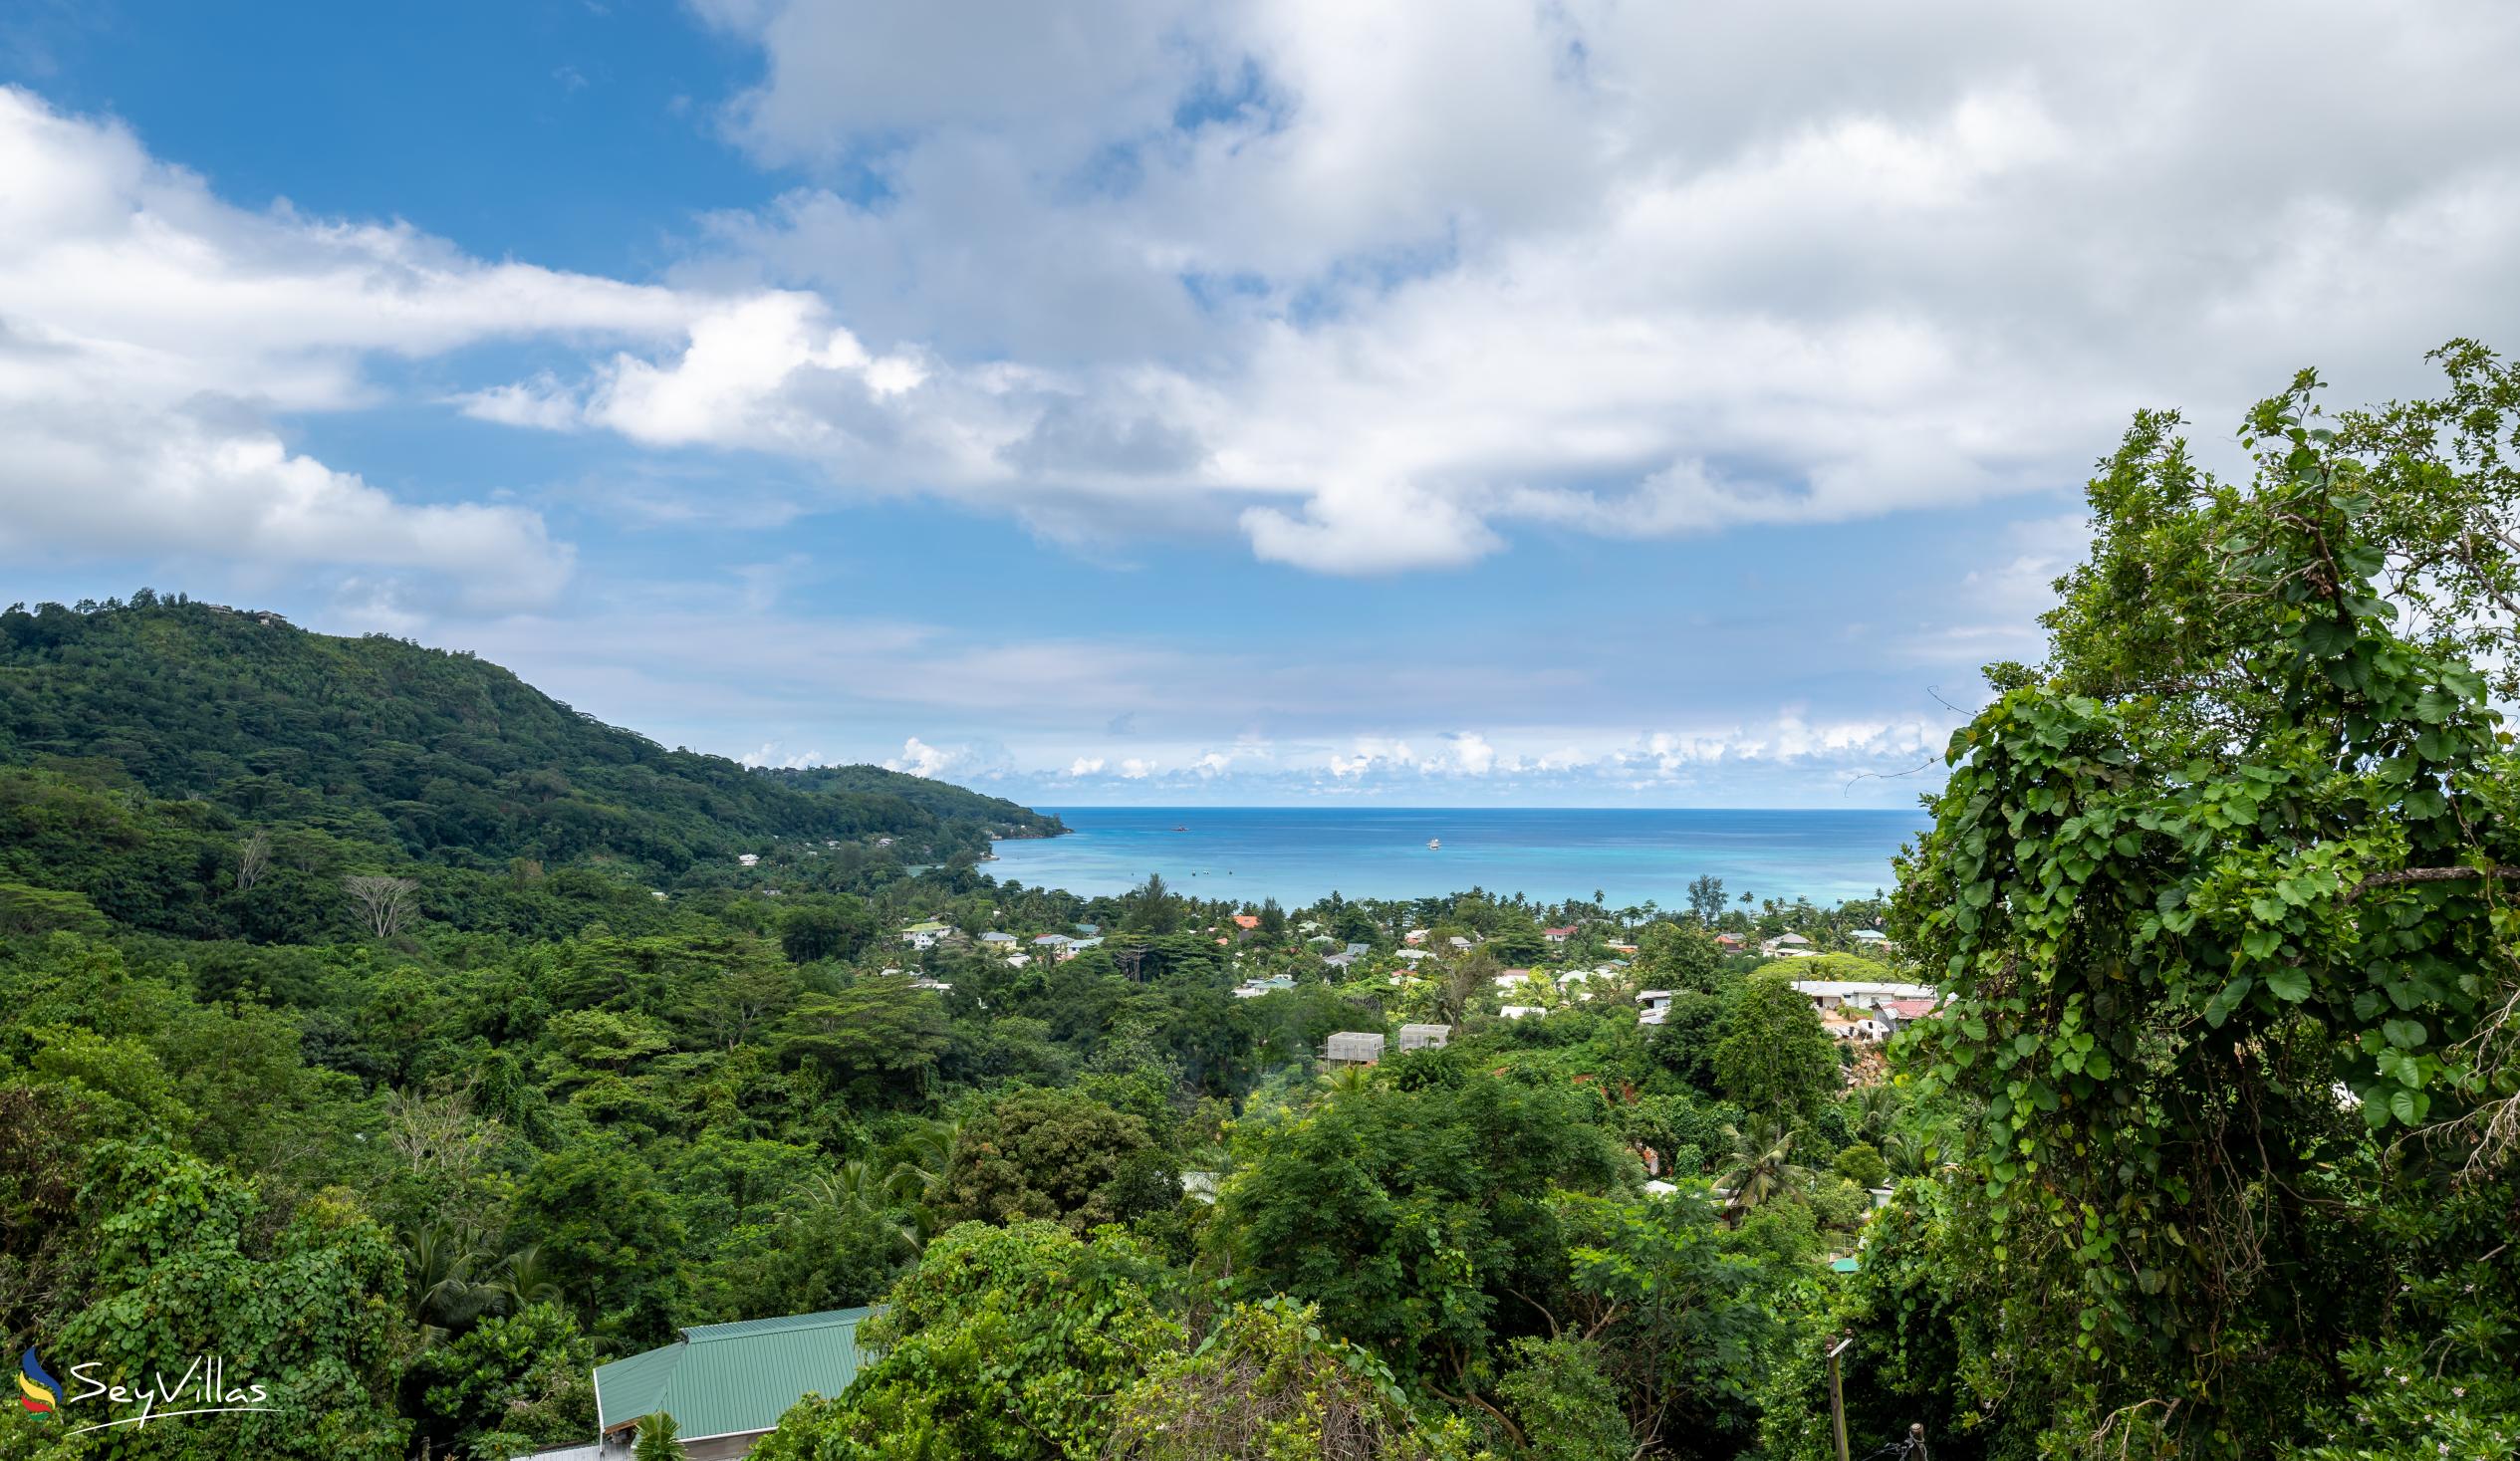 Foto 13: Cella Villa - Posizione - Mahé (Seychelles)